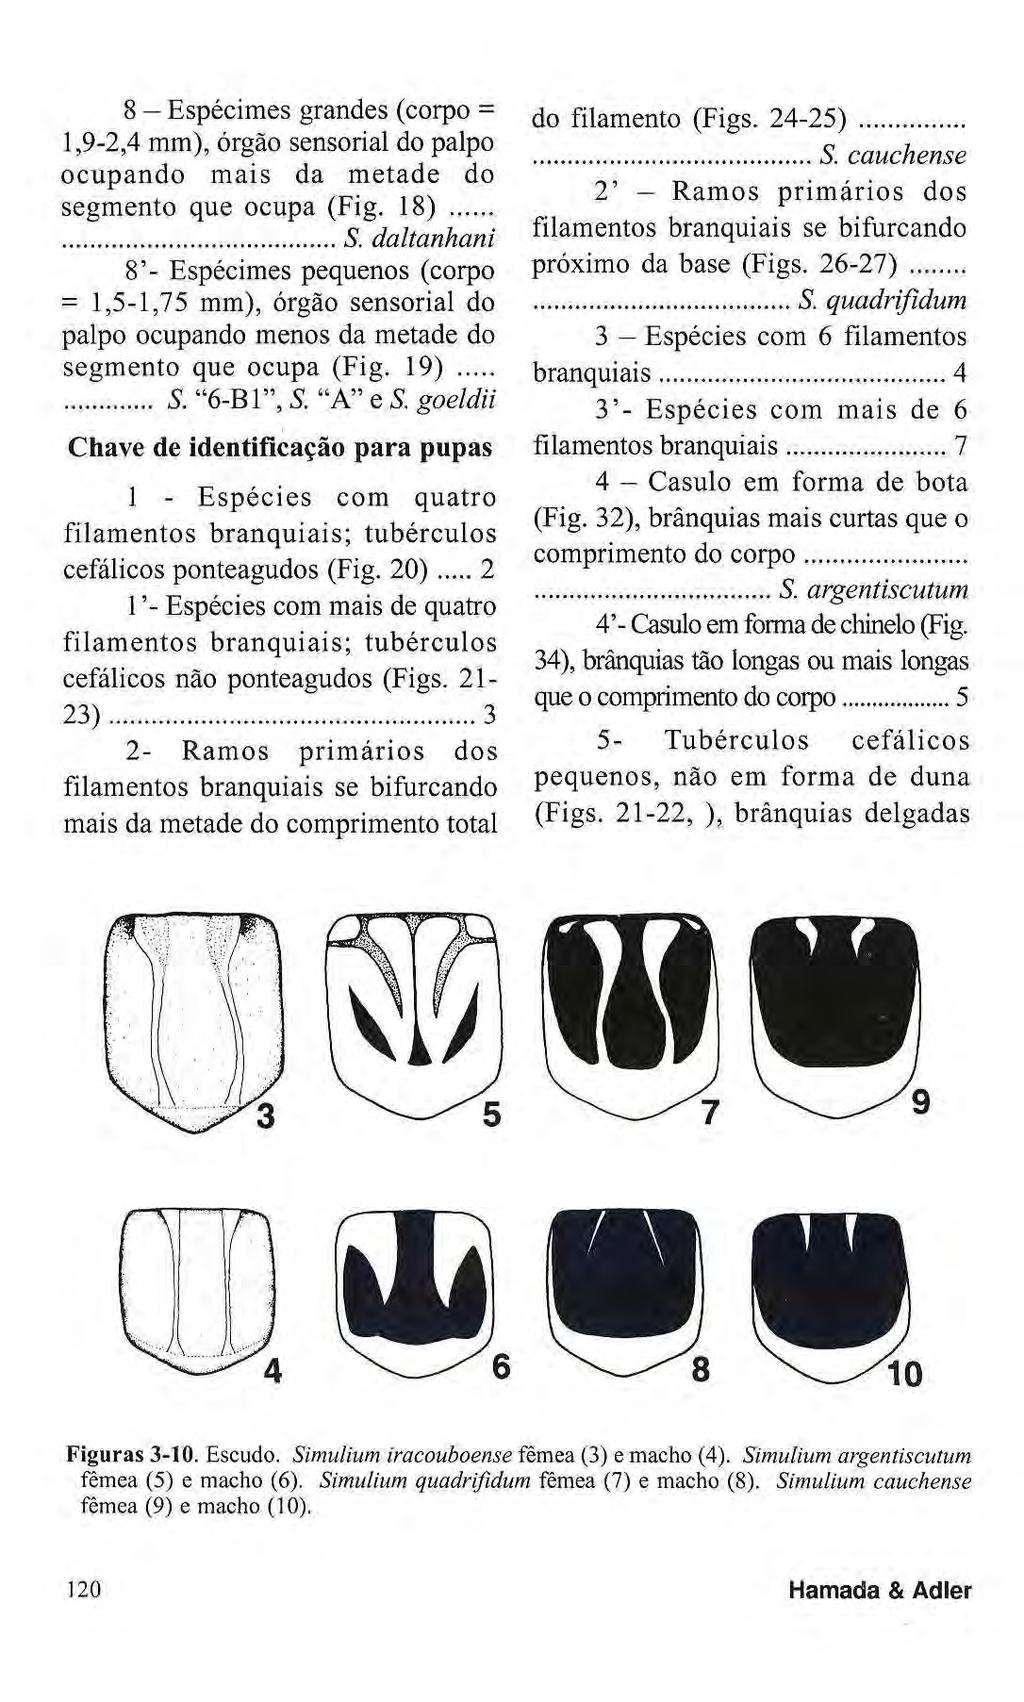 8 Espécimes grandes (corpo = 1,9-2,4 mm), órgão sensorial do palpo ocupando mais da metade do segmento que ocupa (Fig. 18) S.